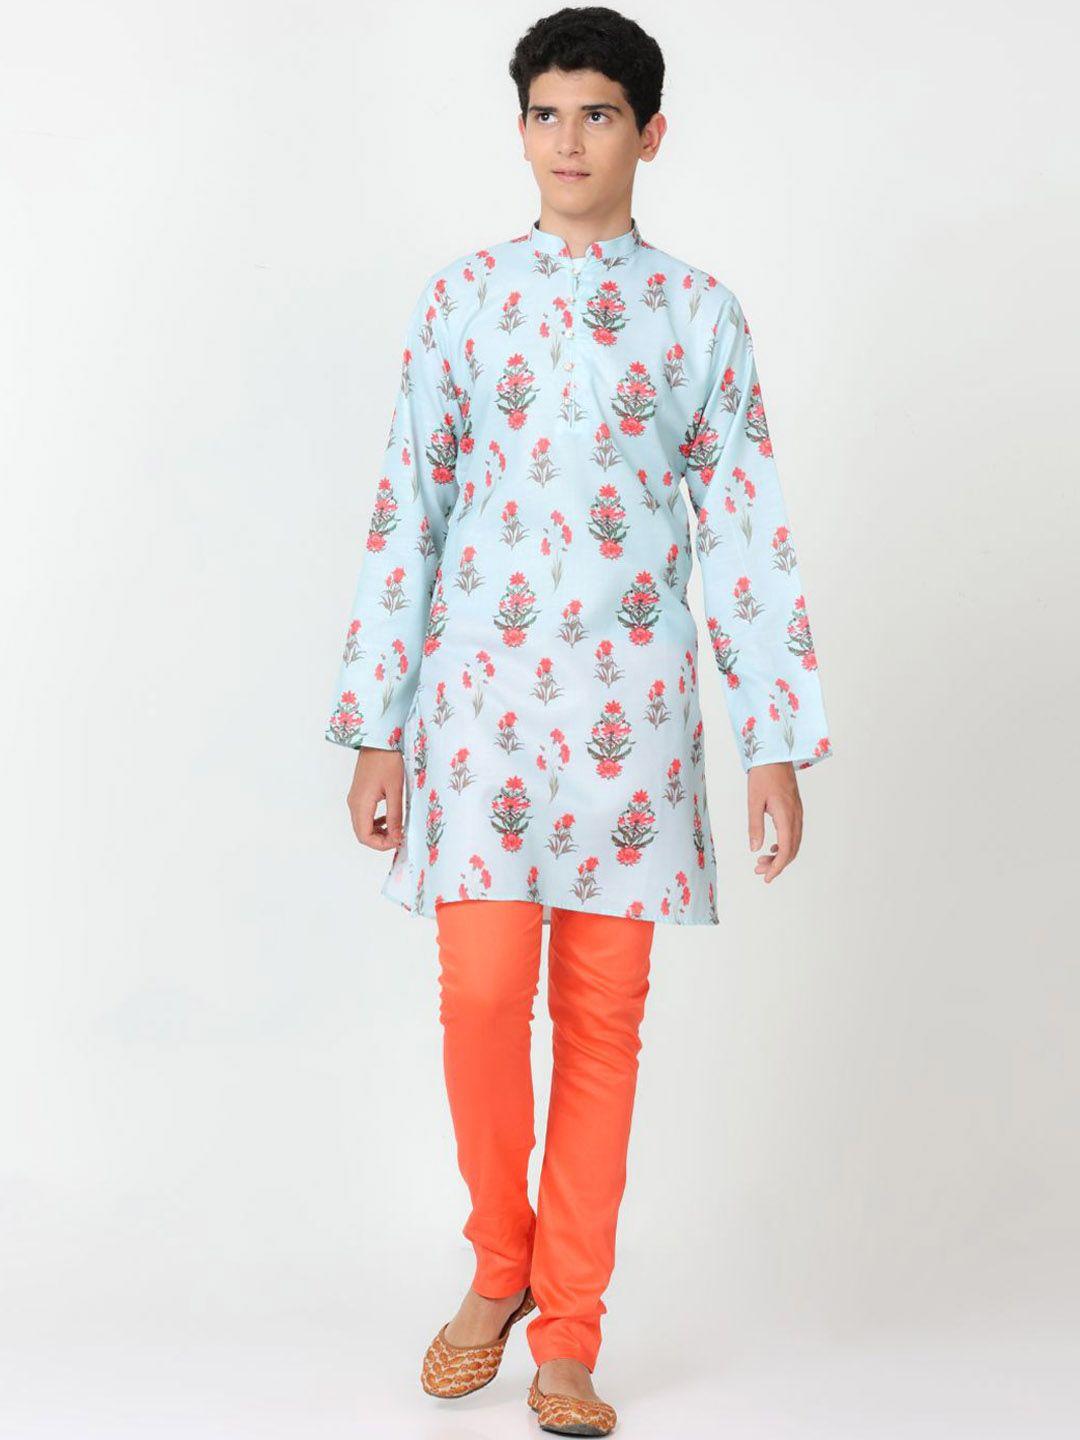 flavido boys blue floral printed regular linen kurti with pyjamas